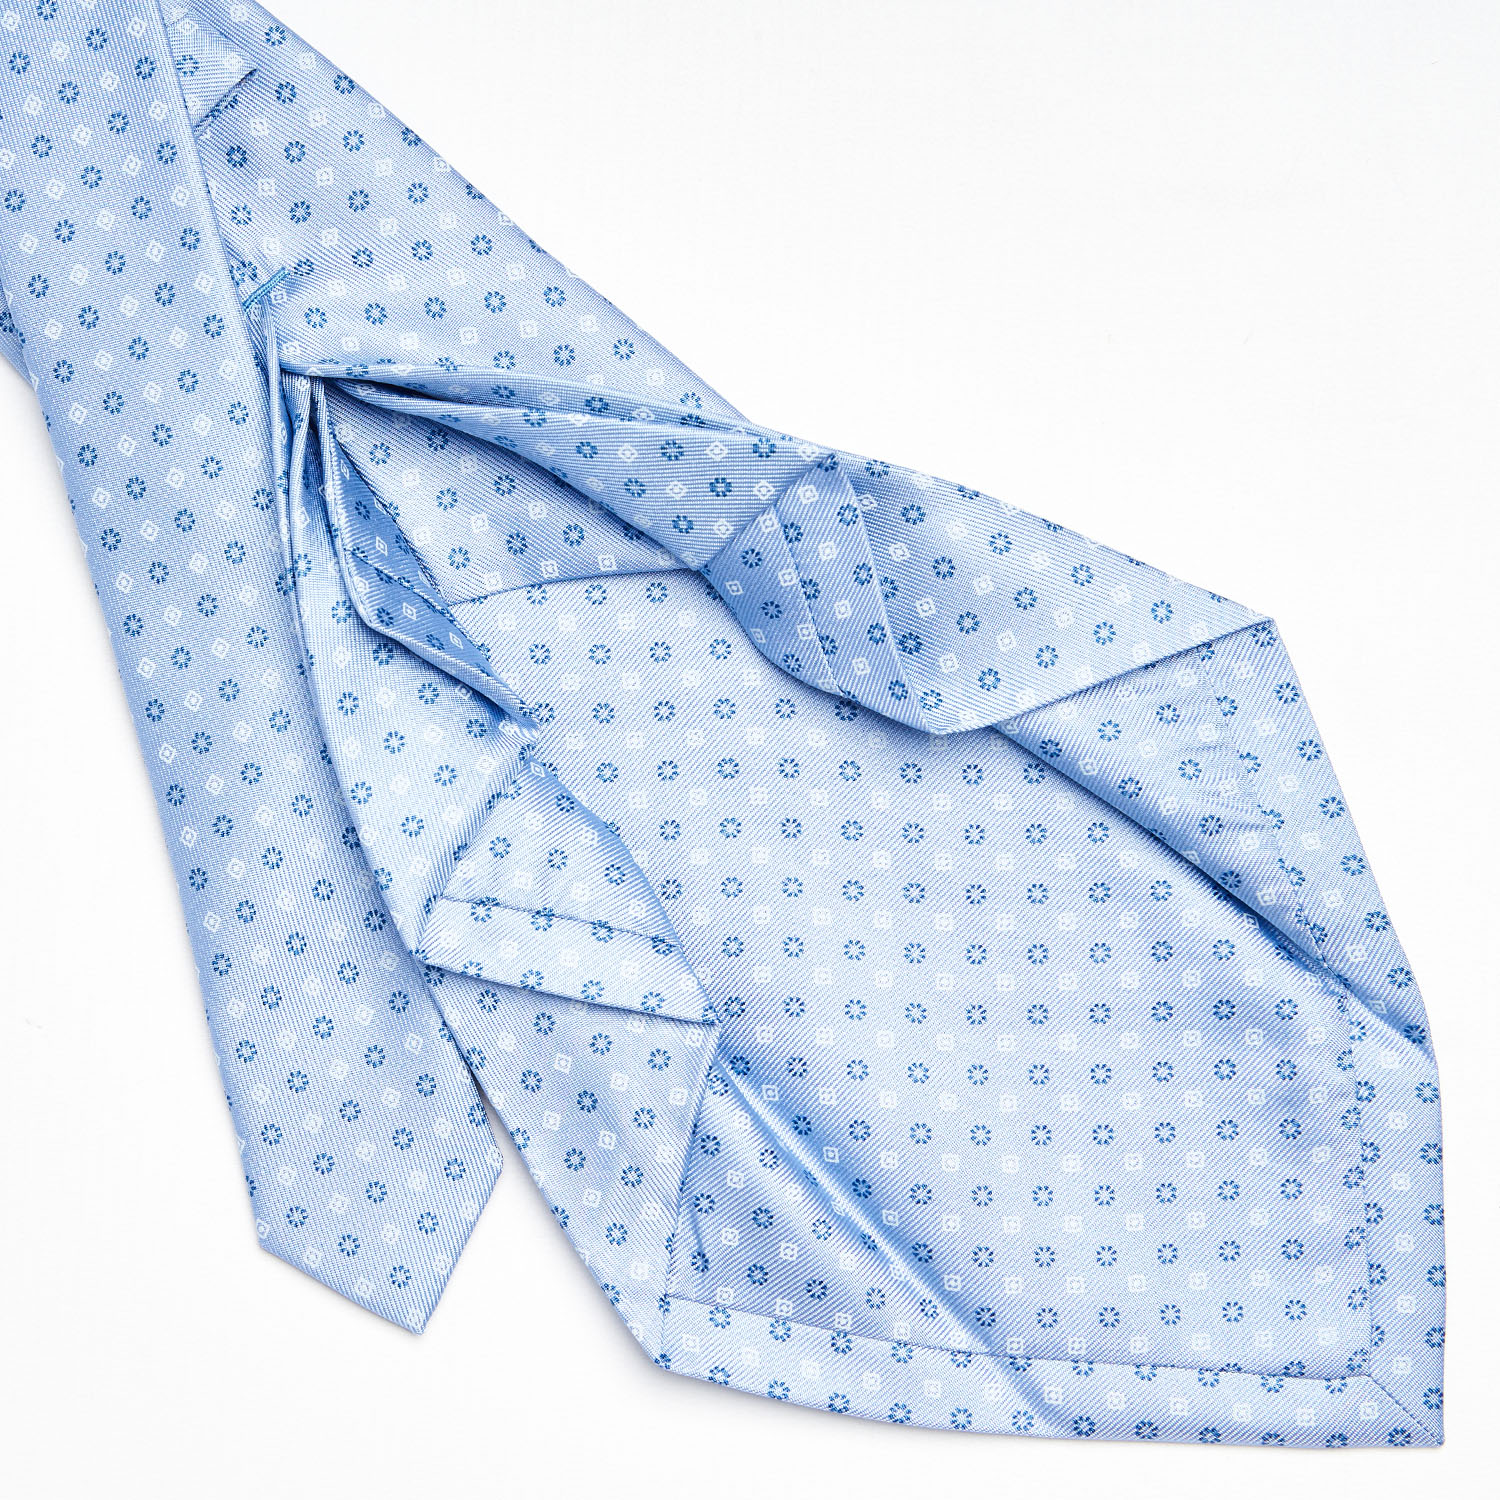 seven fold tie_cravatta 7 pieghe